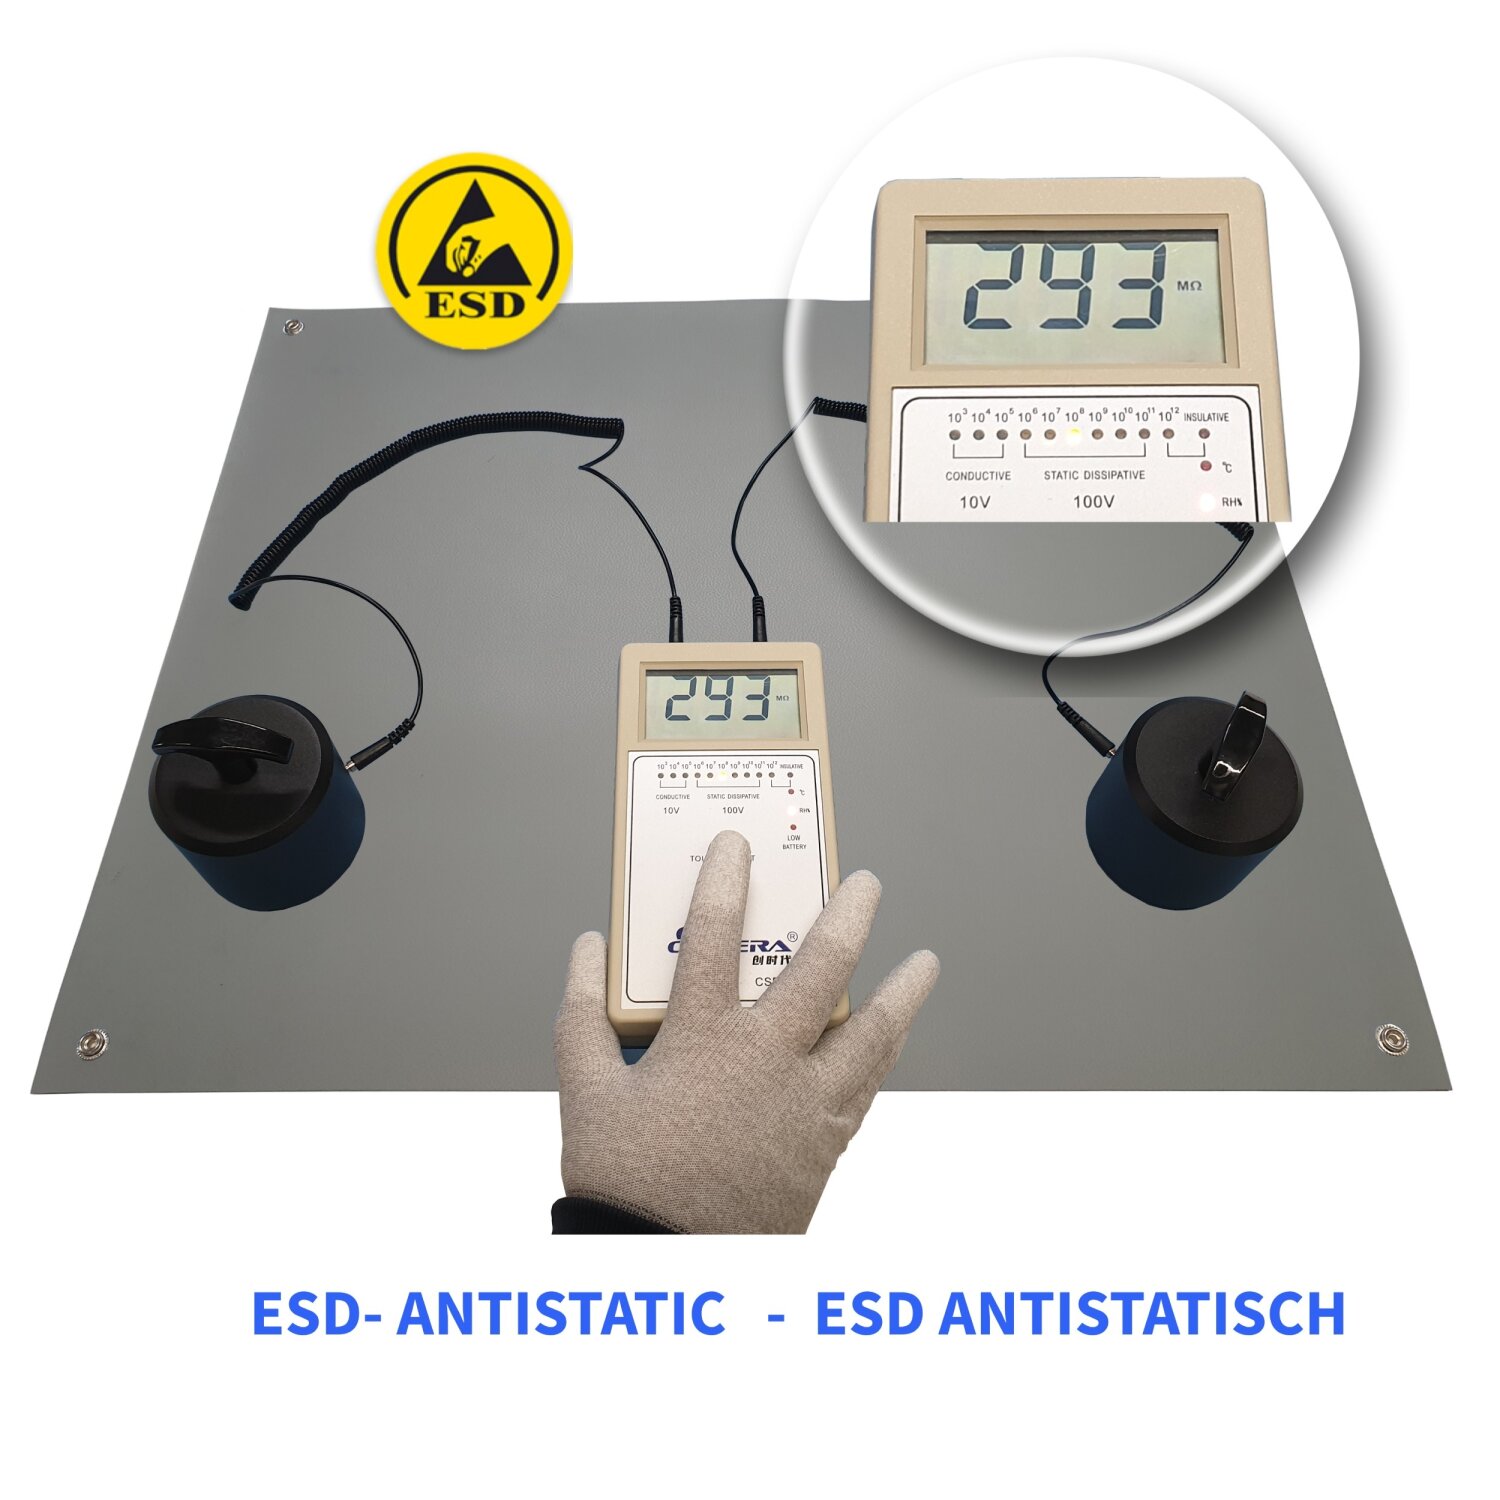 ESD Antistatikmatte - 63,5 x 69,8 cm Elektrische Erdungsunterlage für den  Schreibtisch - Erdungskabel mit Klammer inkl. - Für Zuhause oder die Arbeit